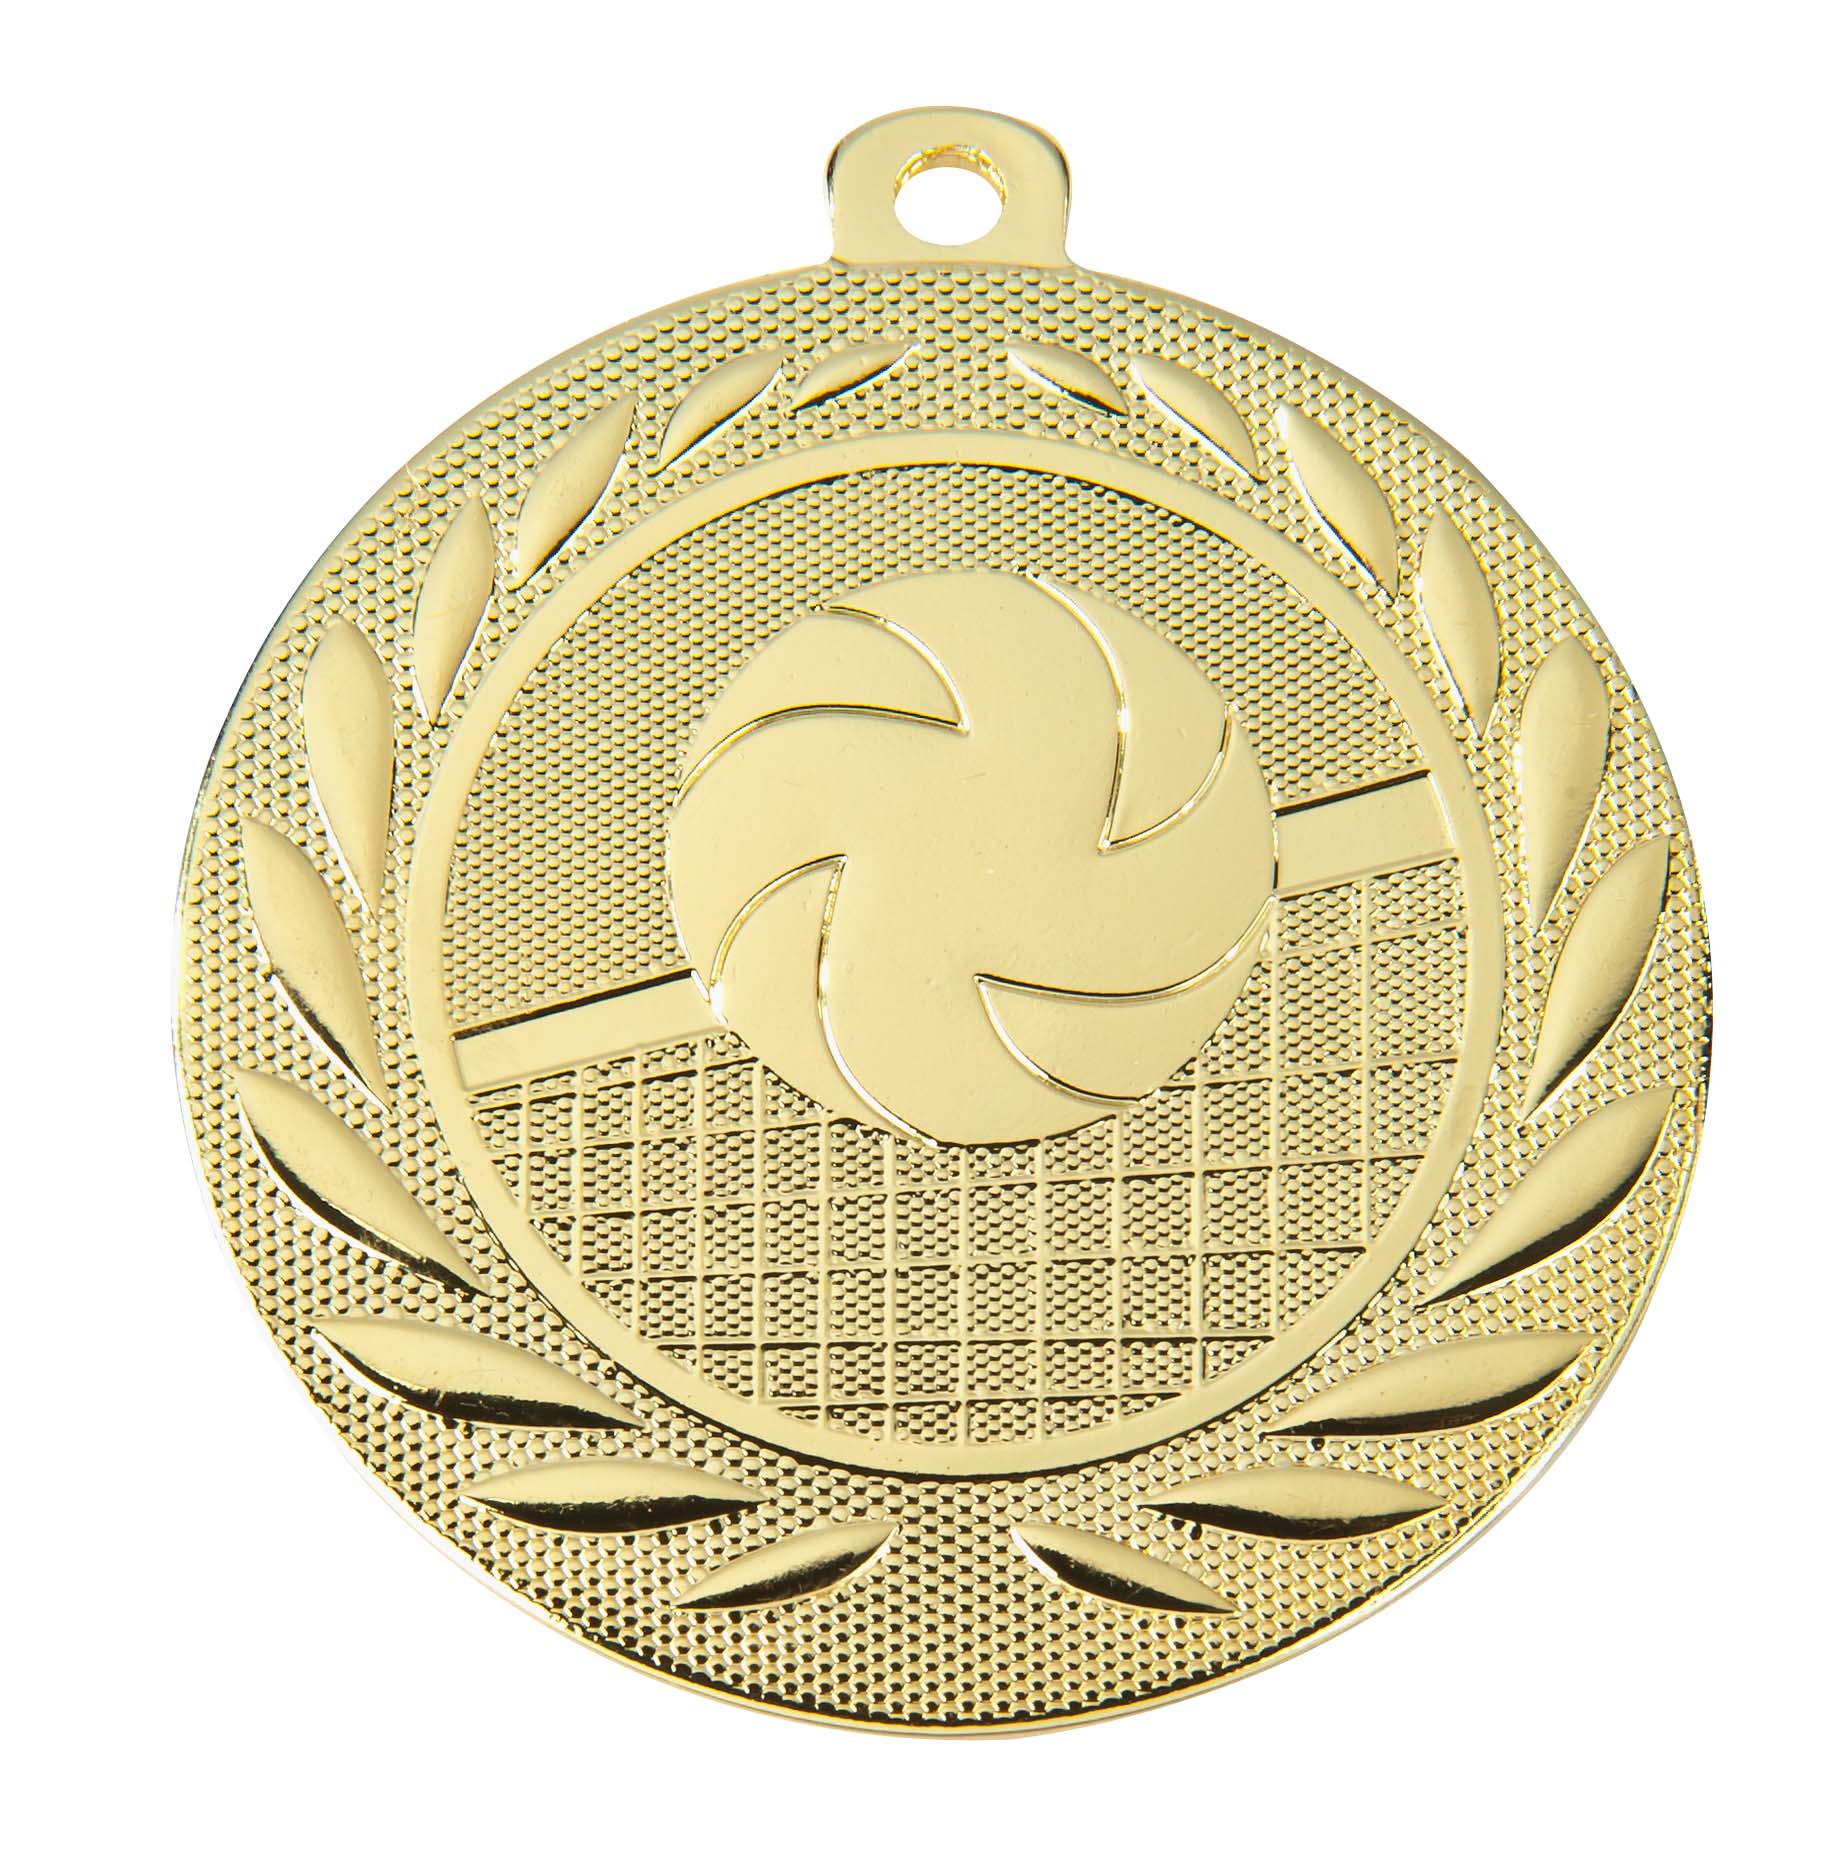 Volleyball-Medaille DI5000N inkl. Band und Beschriftung Gold Fertig montiert gegen Aufpreis